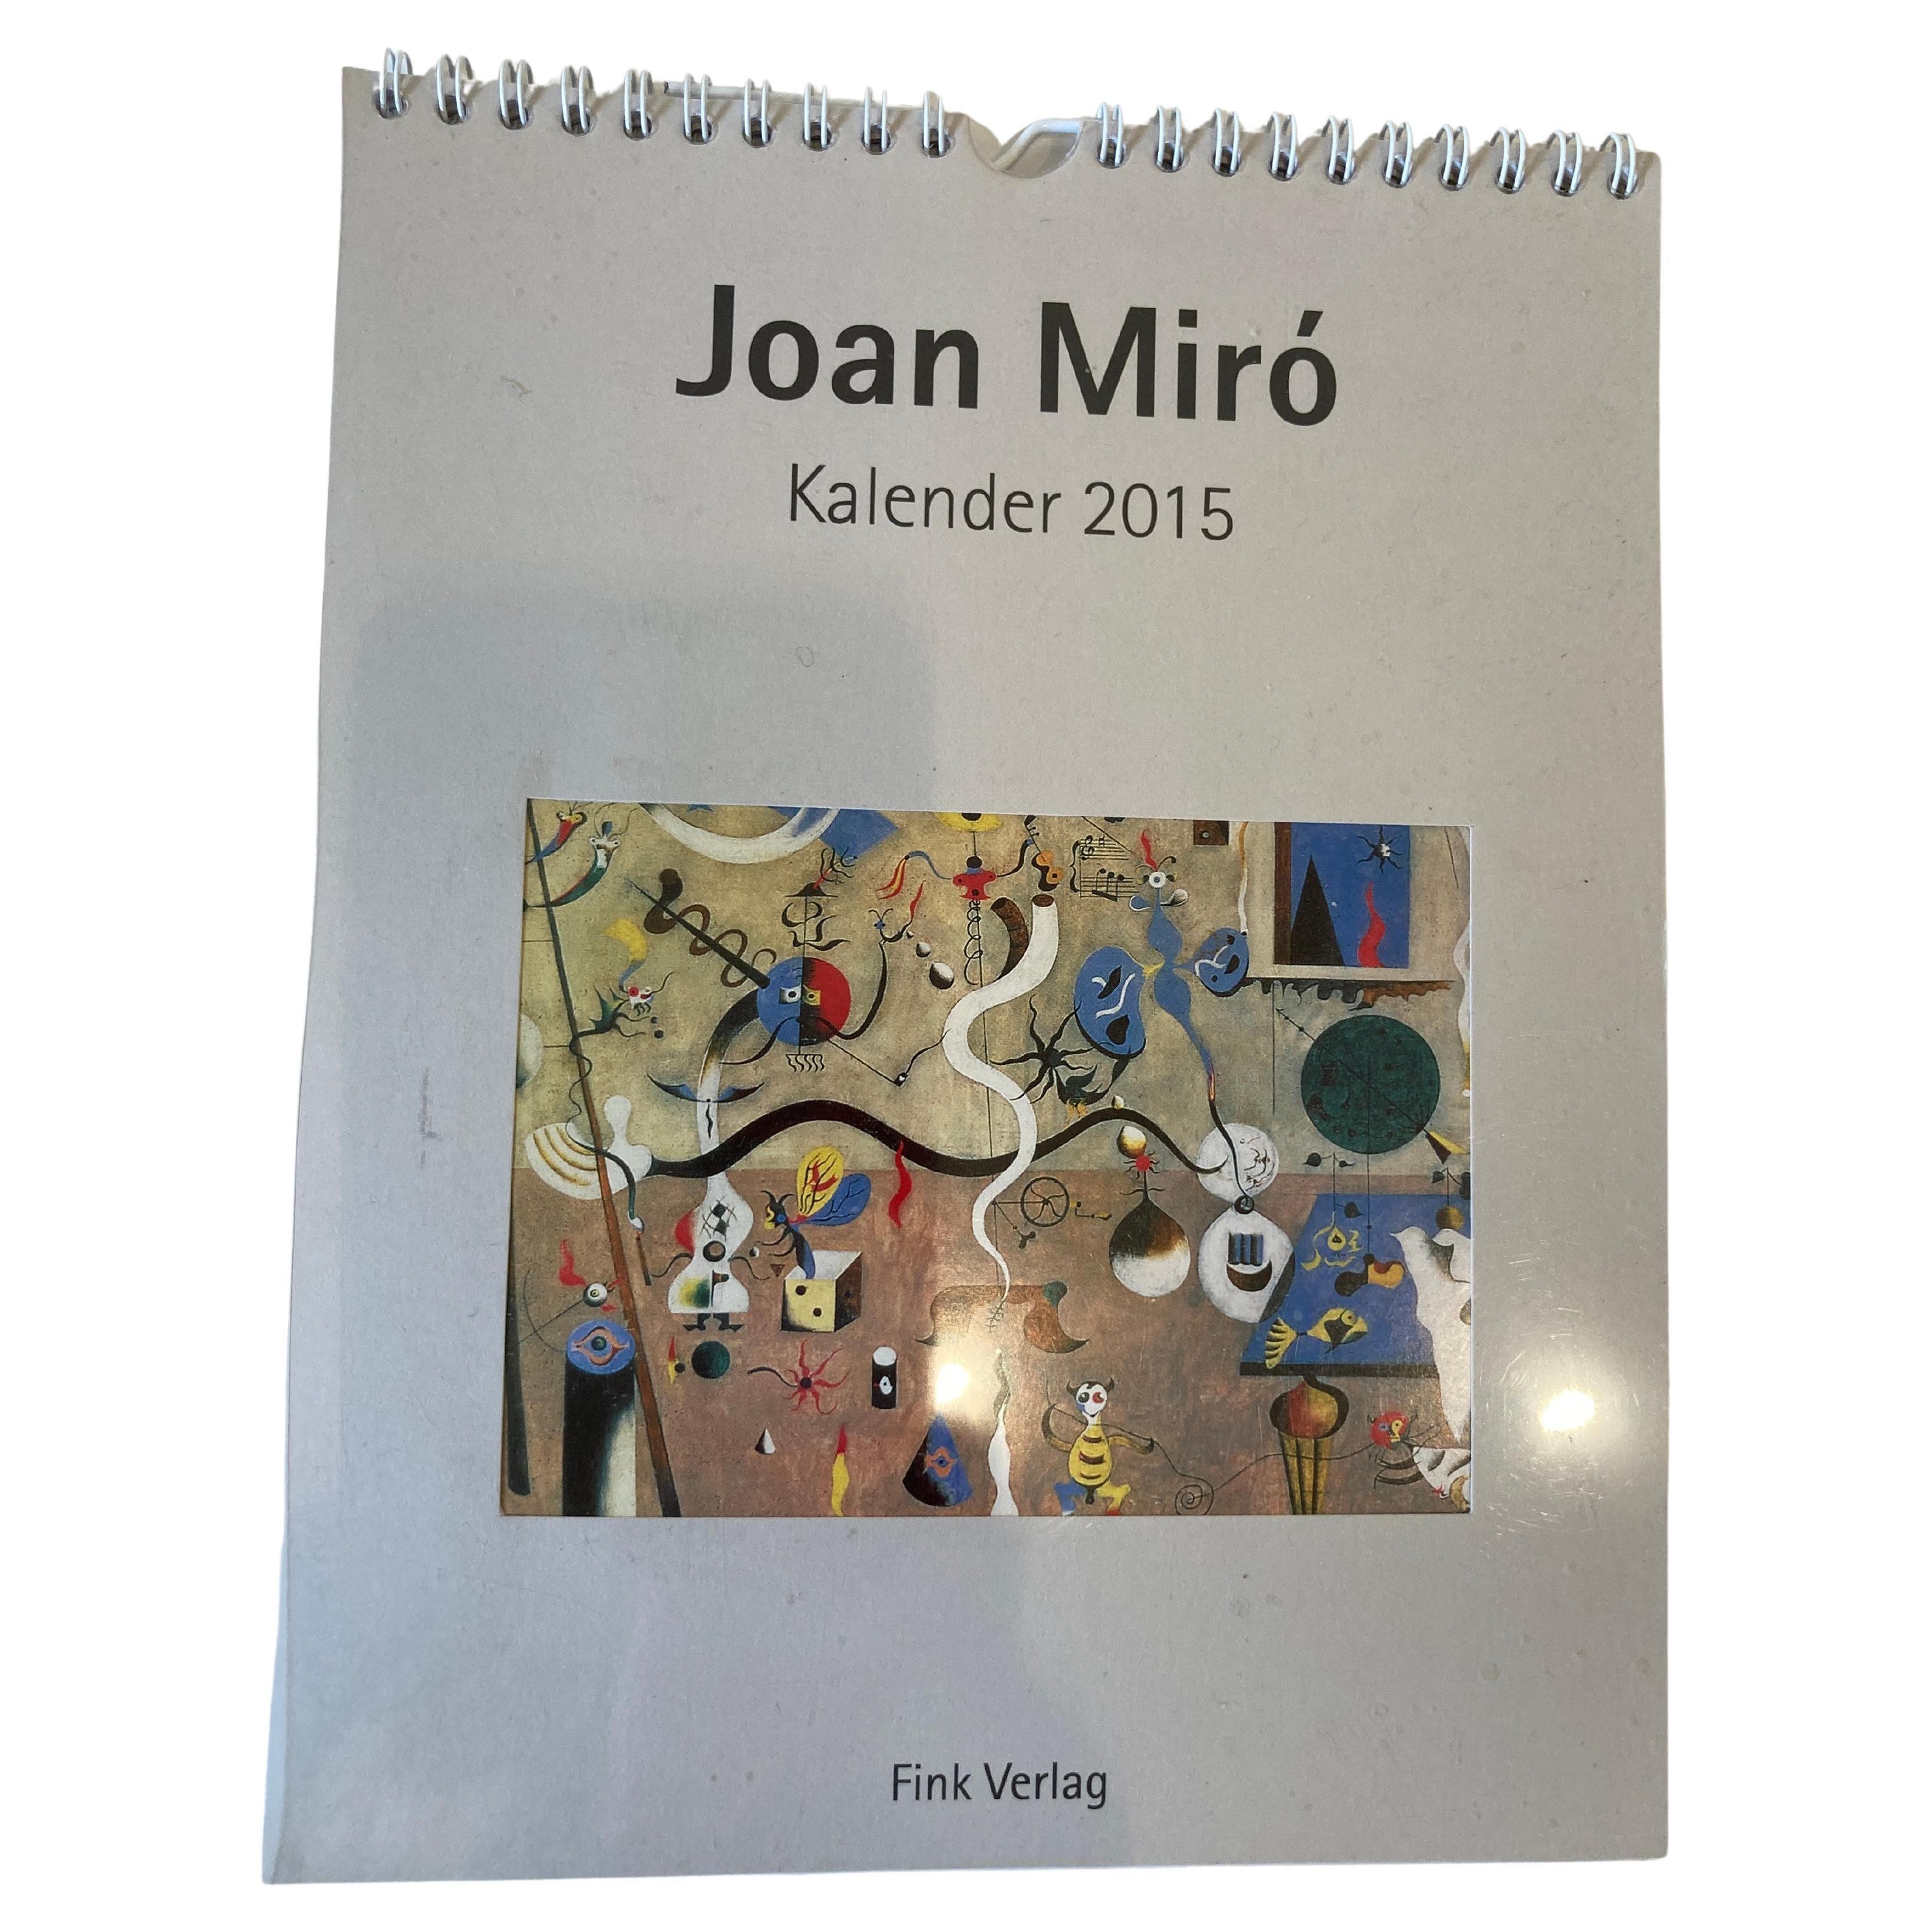 Joan Miro Kalender 2015,
Schöner Kunstkalender nach einem Gemälde von Joan Miro.
Dies ist ein schönes Sammelheft.
 